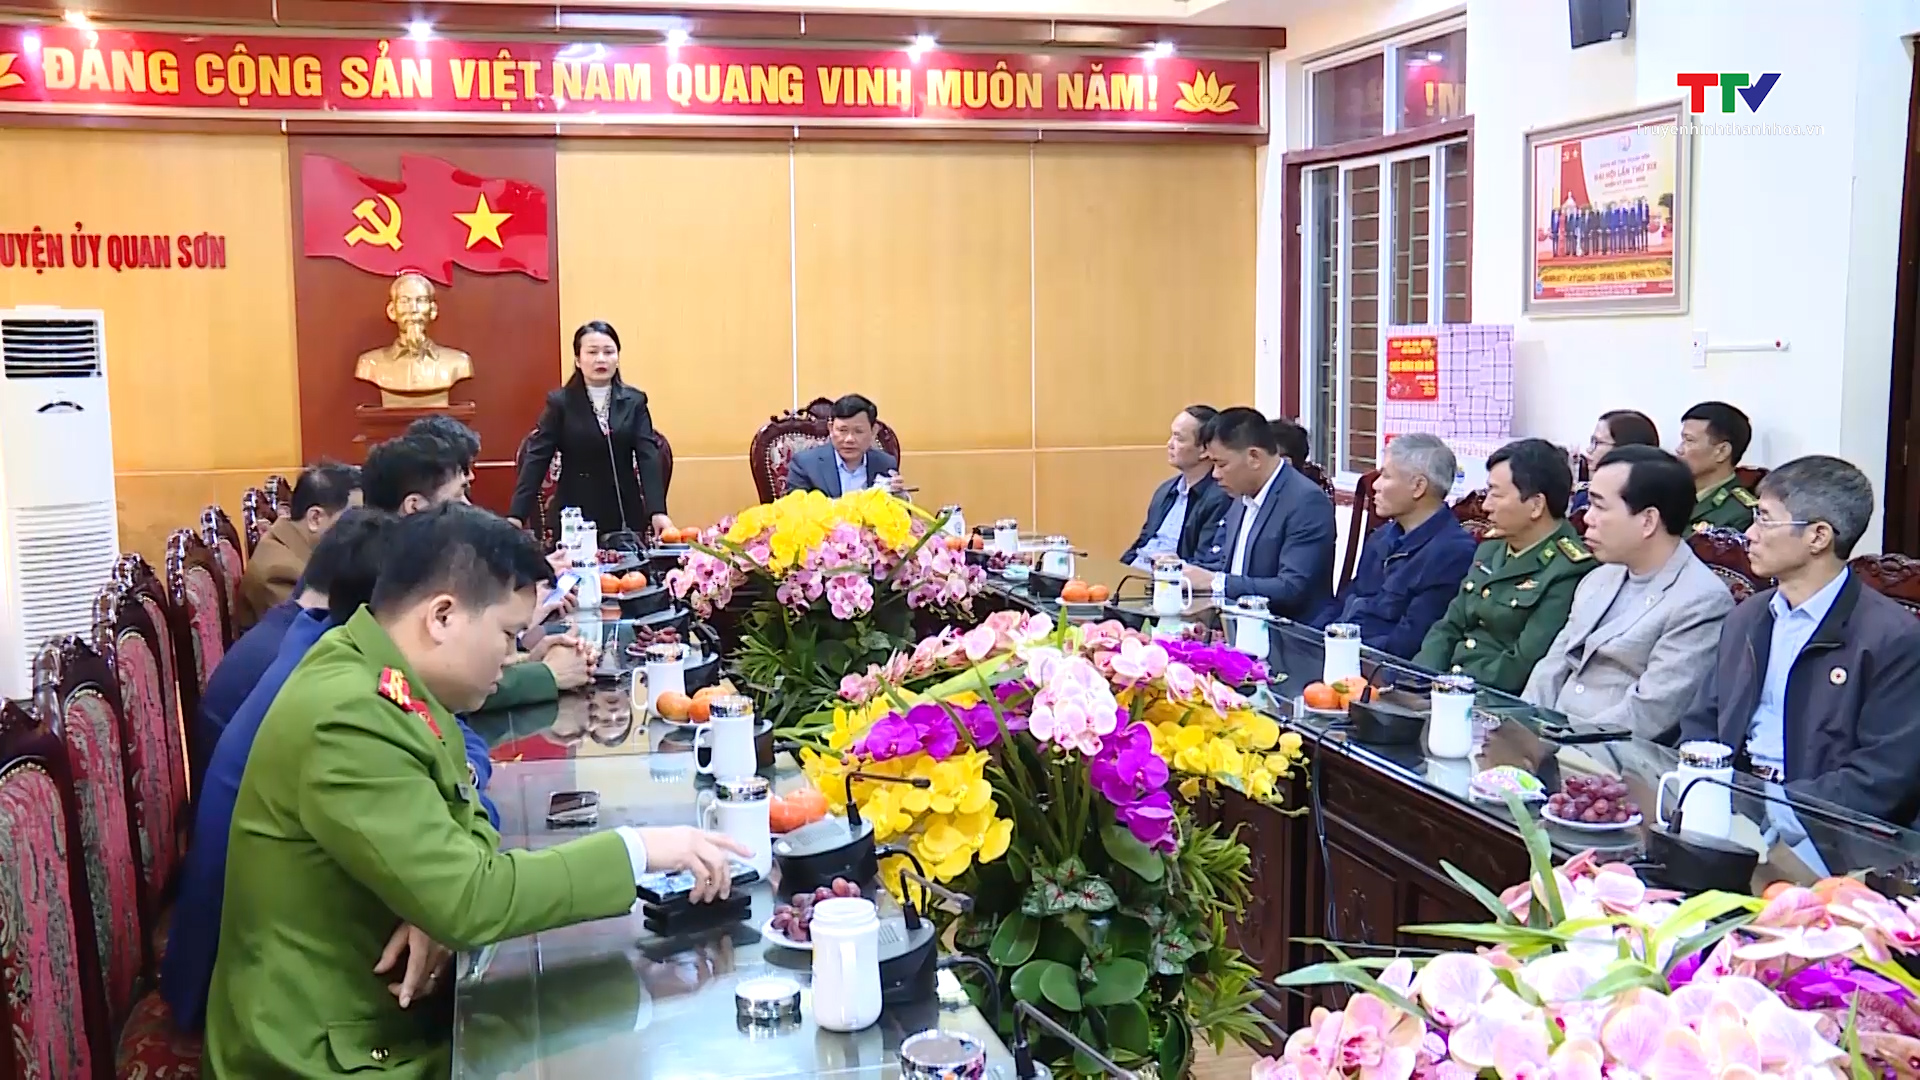 Hàng trăm hộ chính sách huyện Quan Sơn được hỗ trợ nhà ở - Ảnh 3.